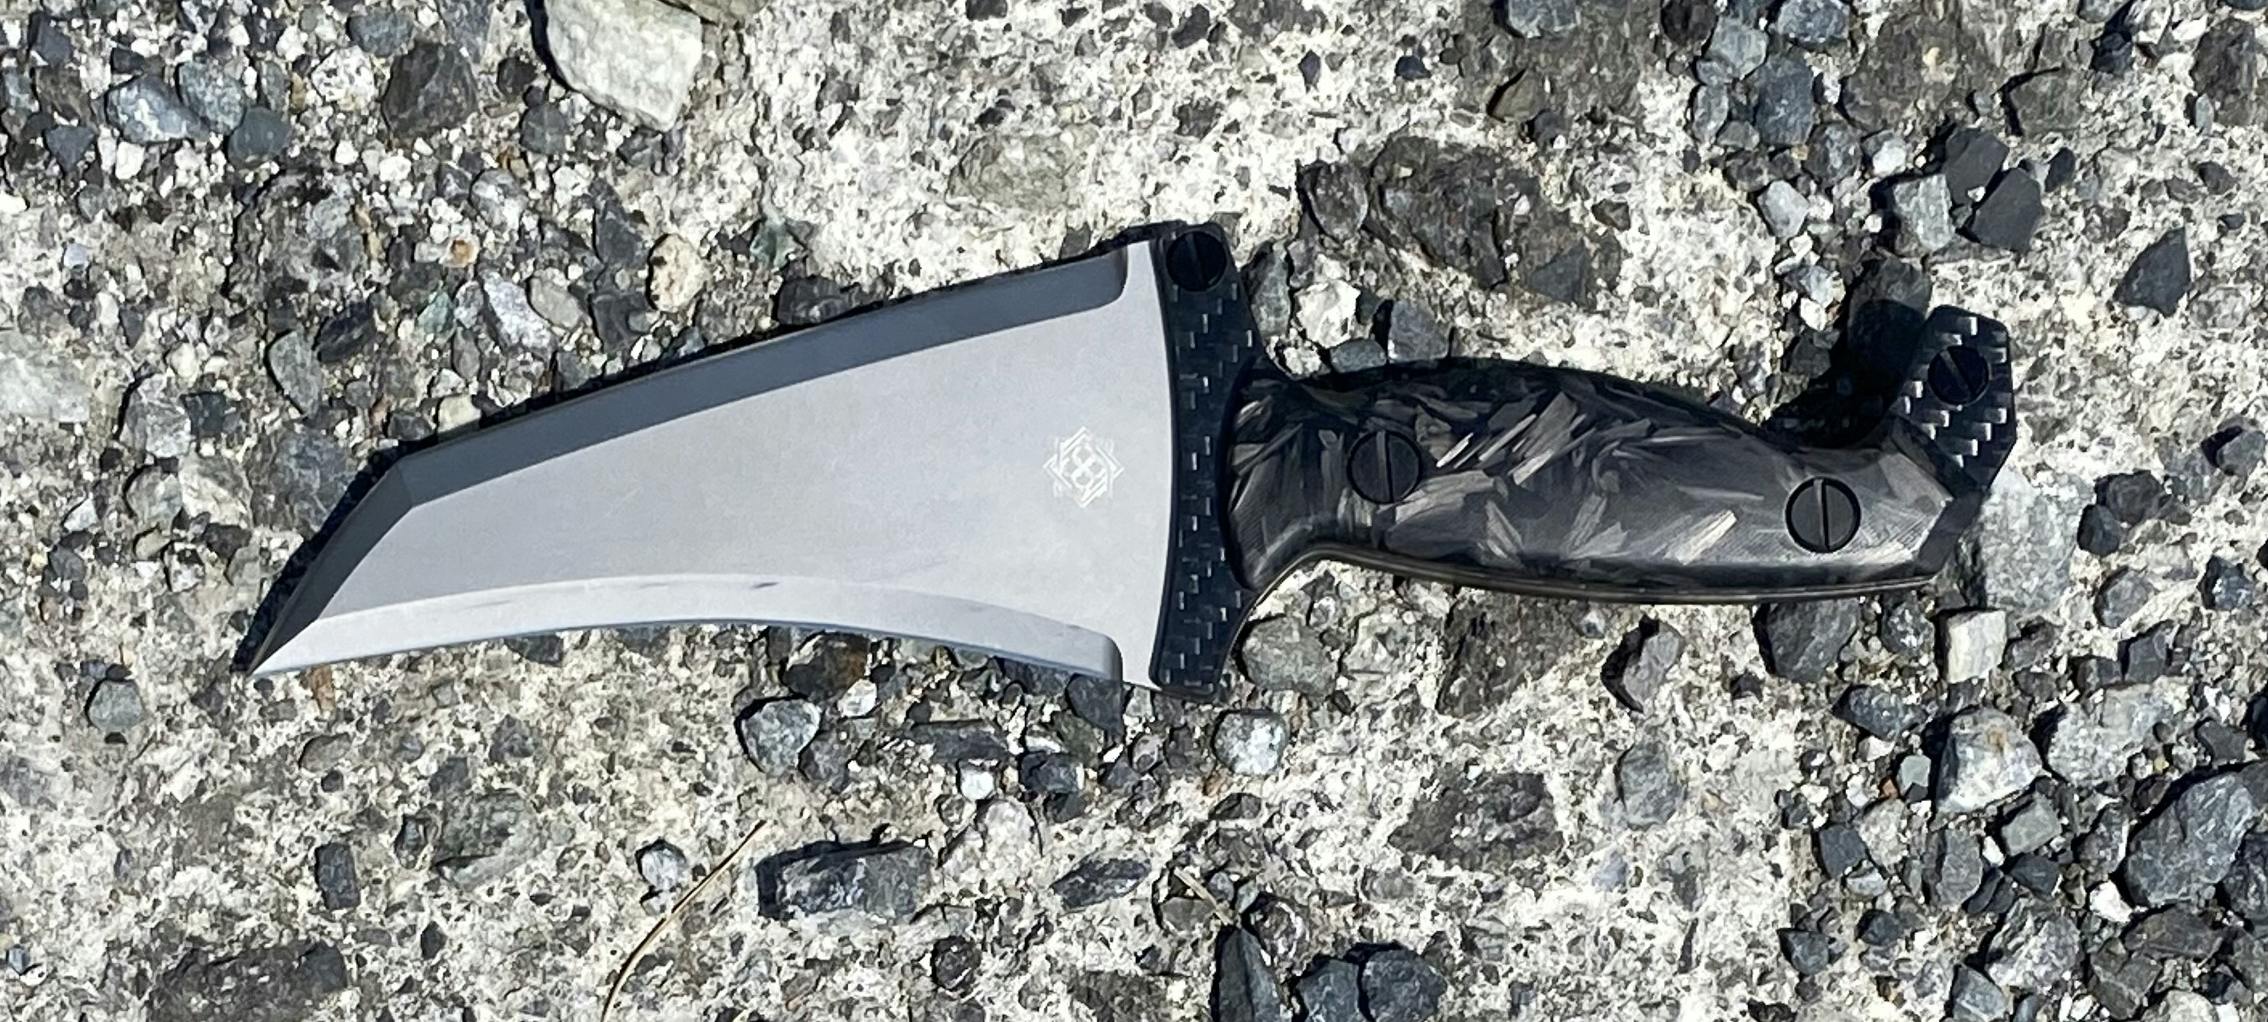 田村装備開発 クライシスナイフ セット CRISIS Knife - 個人装備